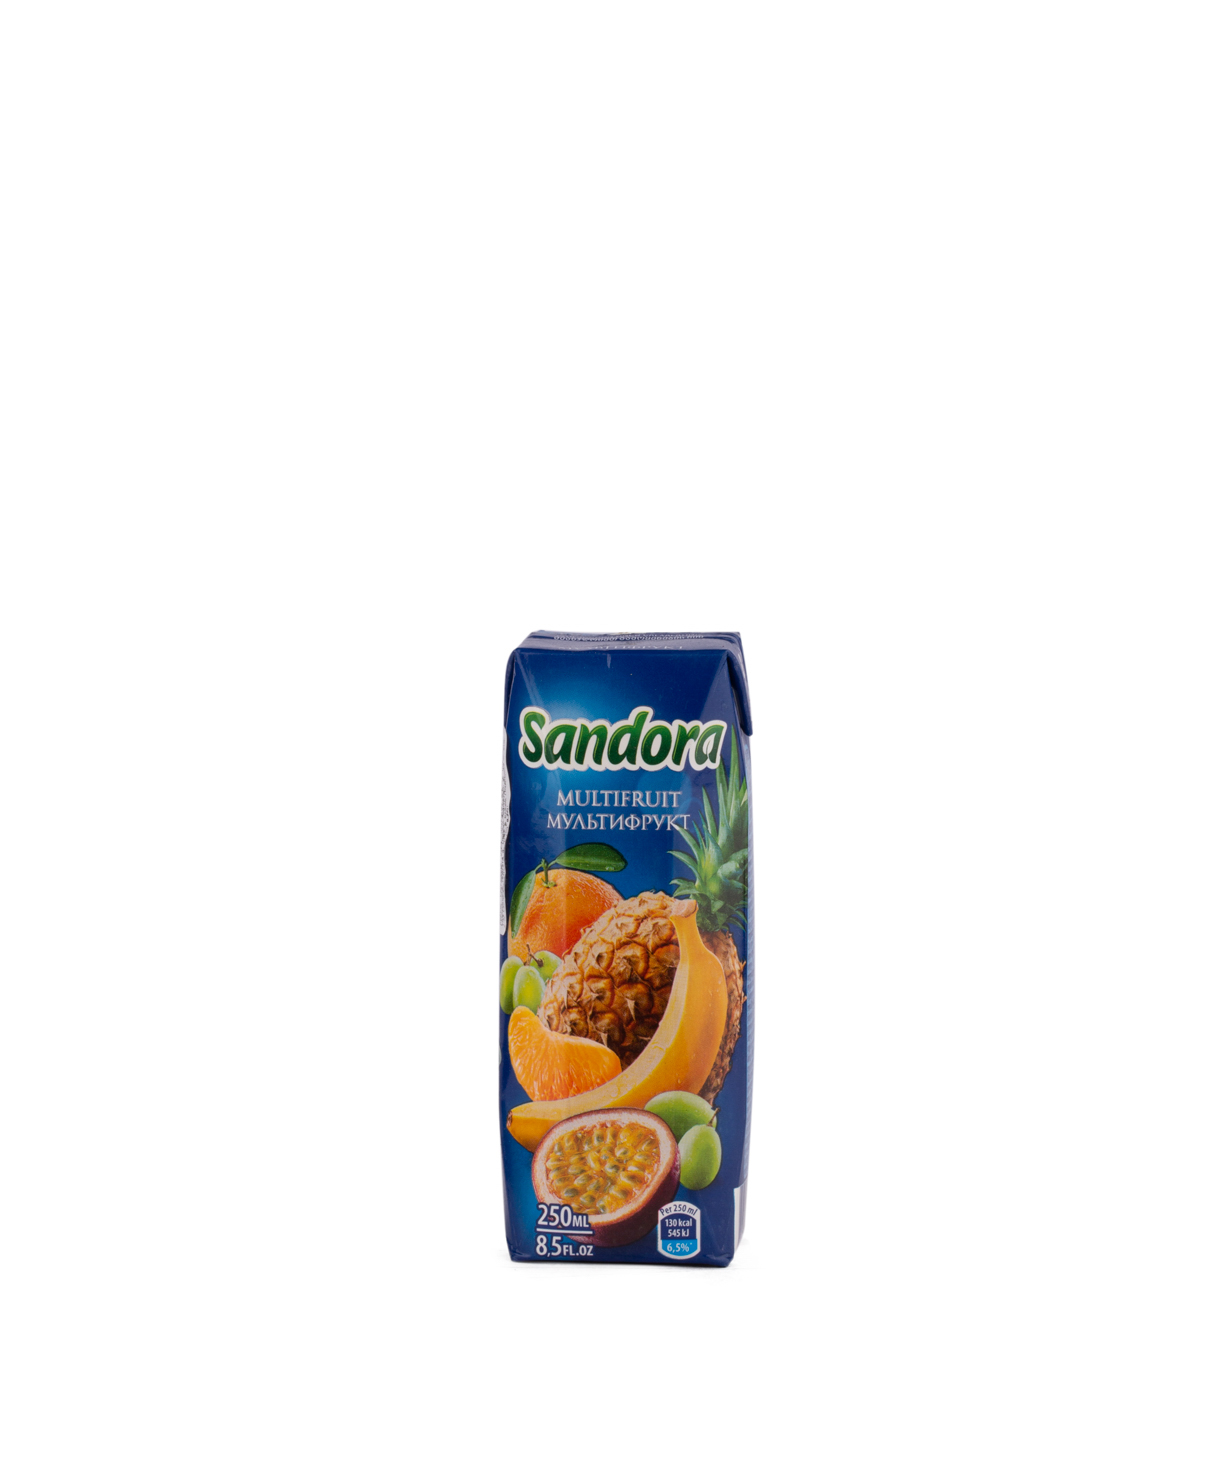 Հյութ բնական «Sandora» 0.25լ